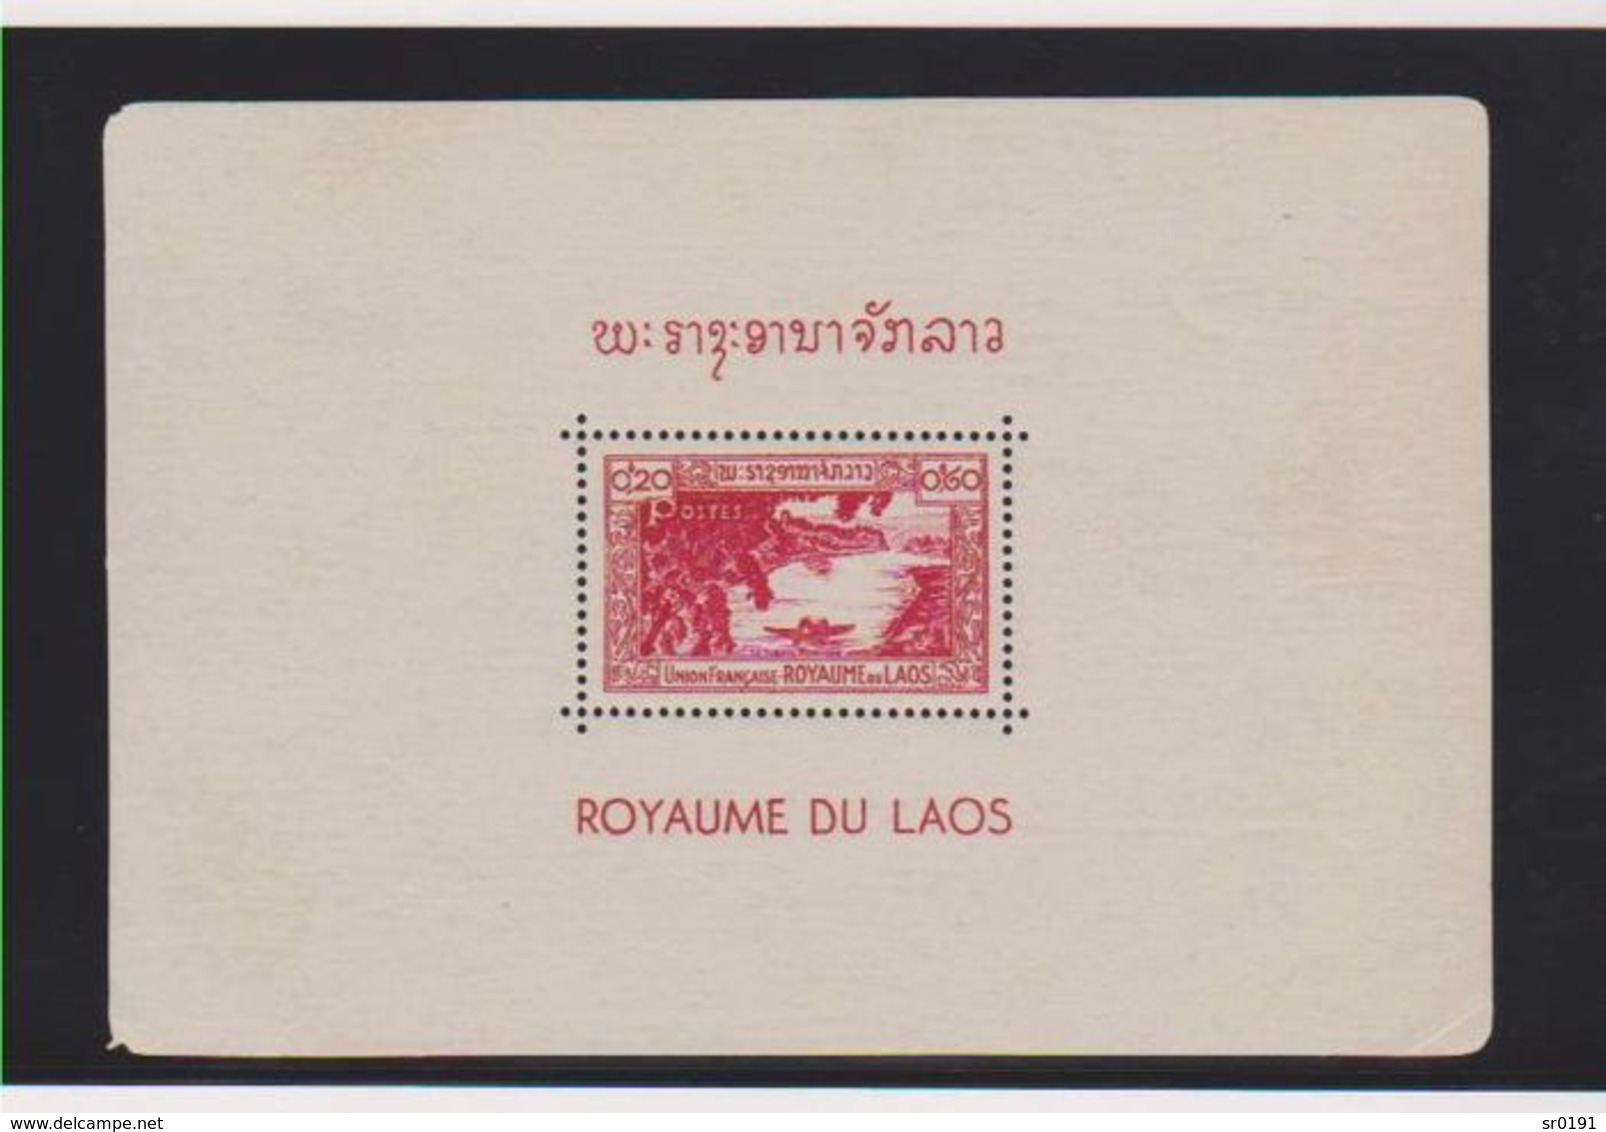 Laos 1952 - 26 BLOCS Série Complète Bloc Feuillet Yvert N° 1 à 26  neuf sans charniere